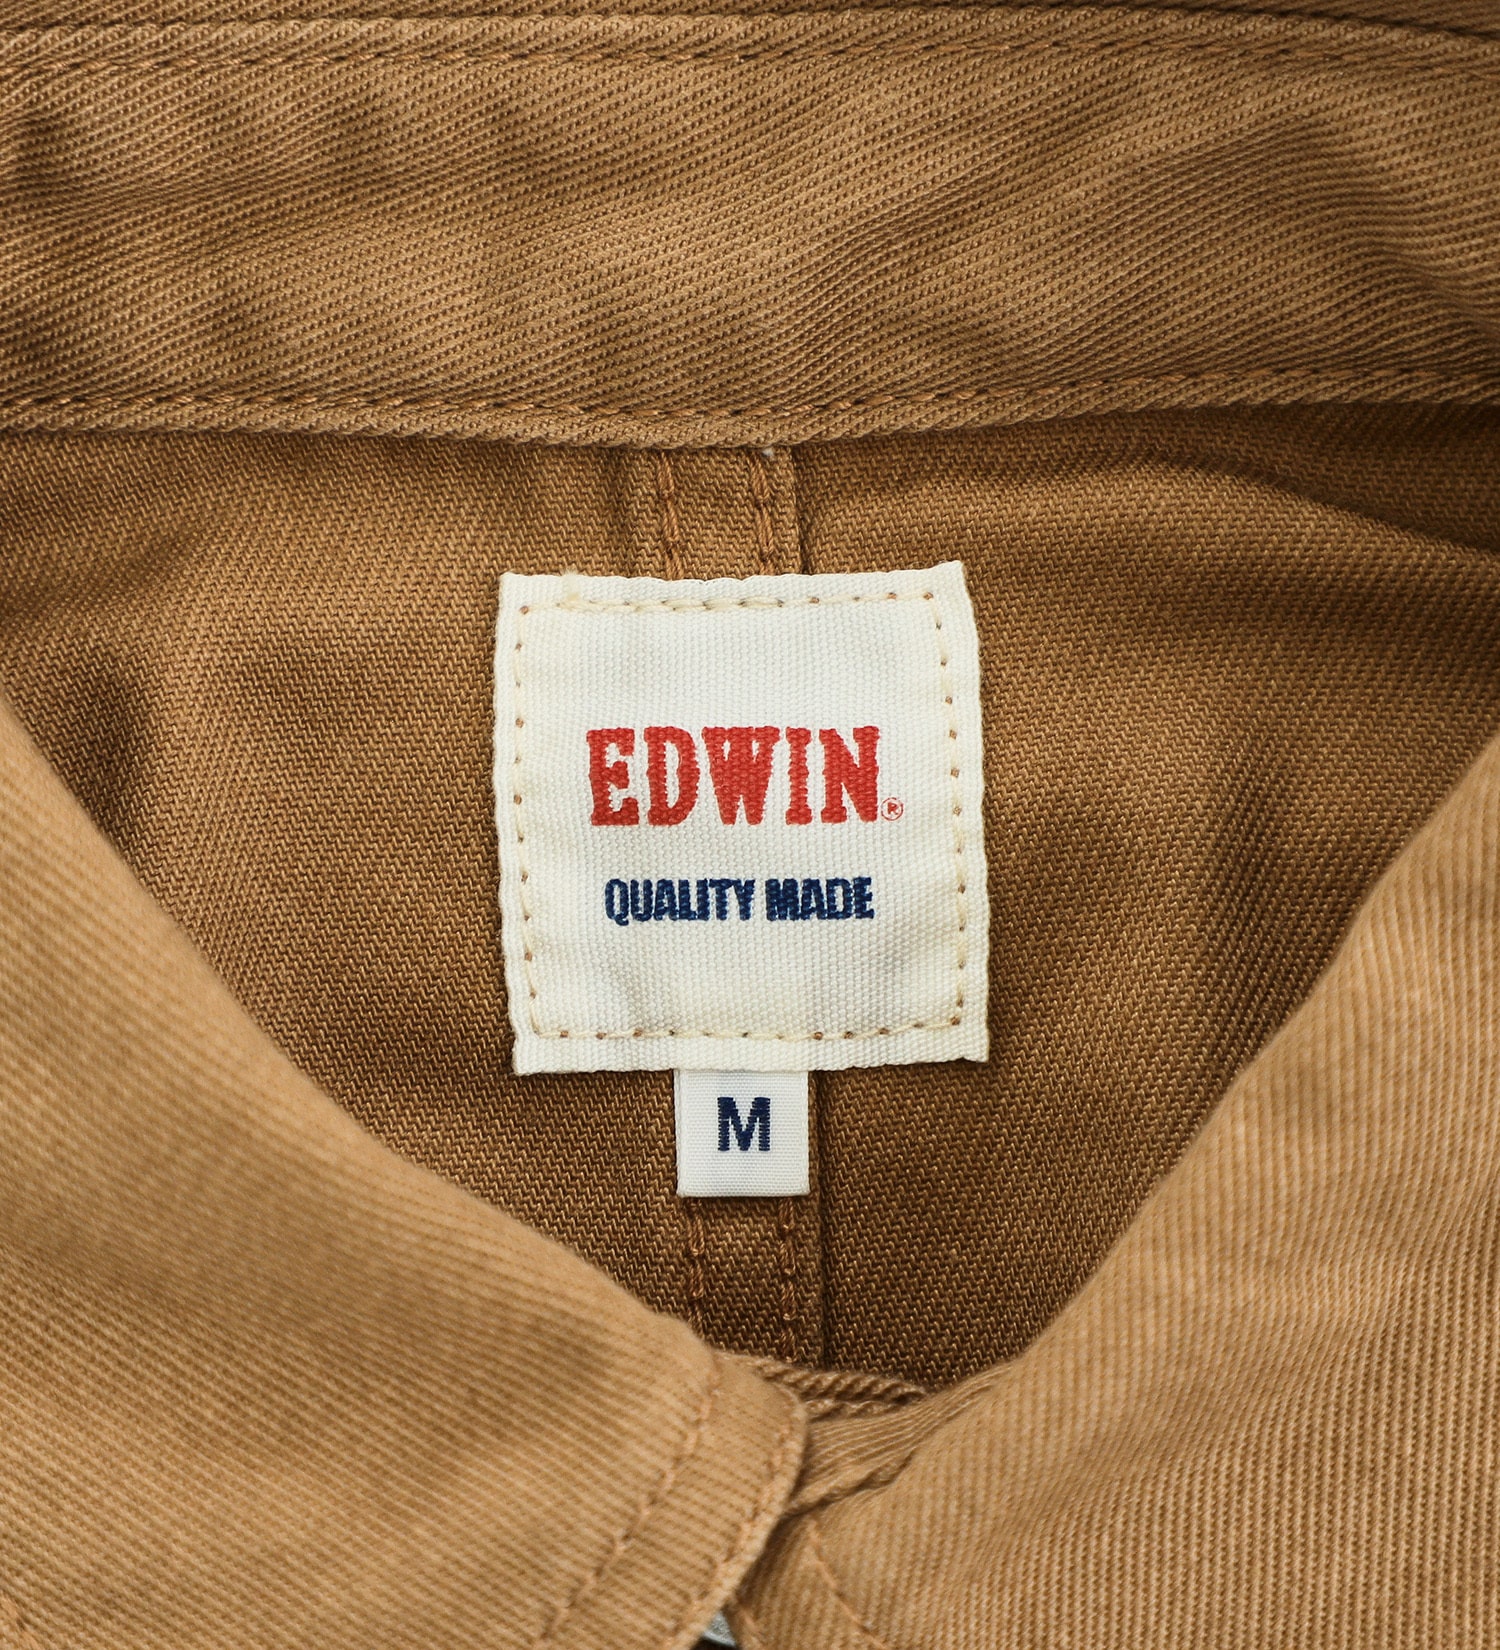 EDWIN(エドウイン)の【BLACKFRIDAY】EDWIN カバーオールジャケット【アウトレット店舗・WEB限定】|ジャケット/アウター/カバーオール/メンズ|ダークベージュ